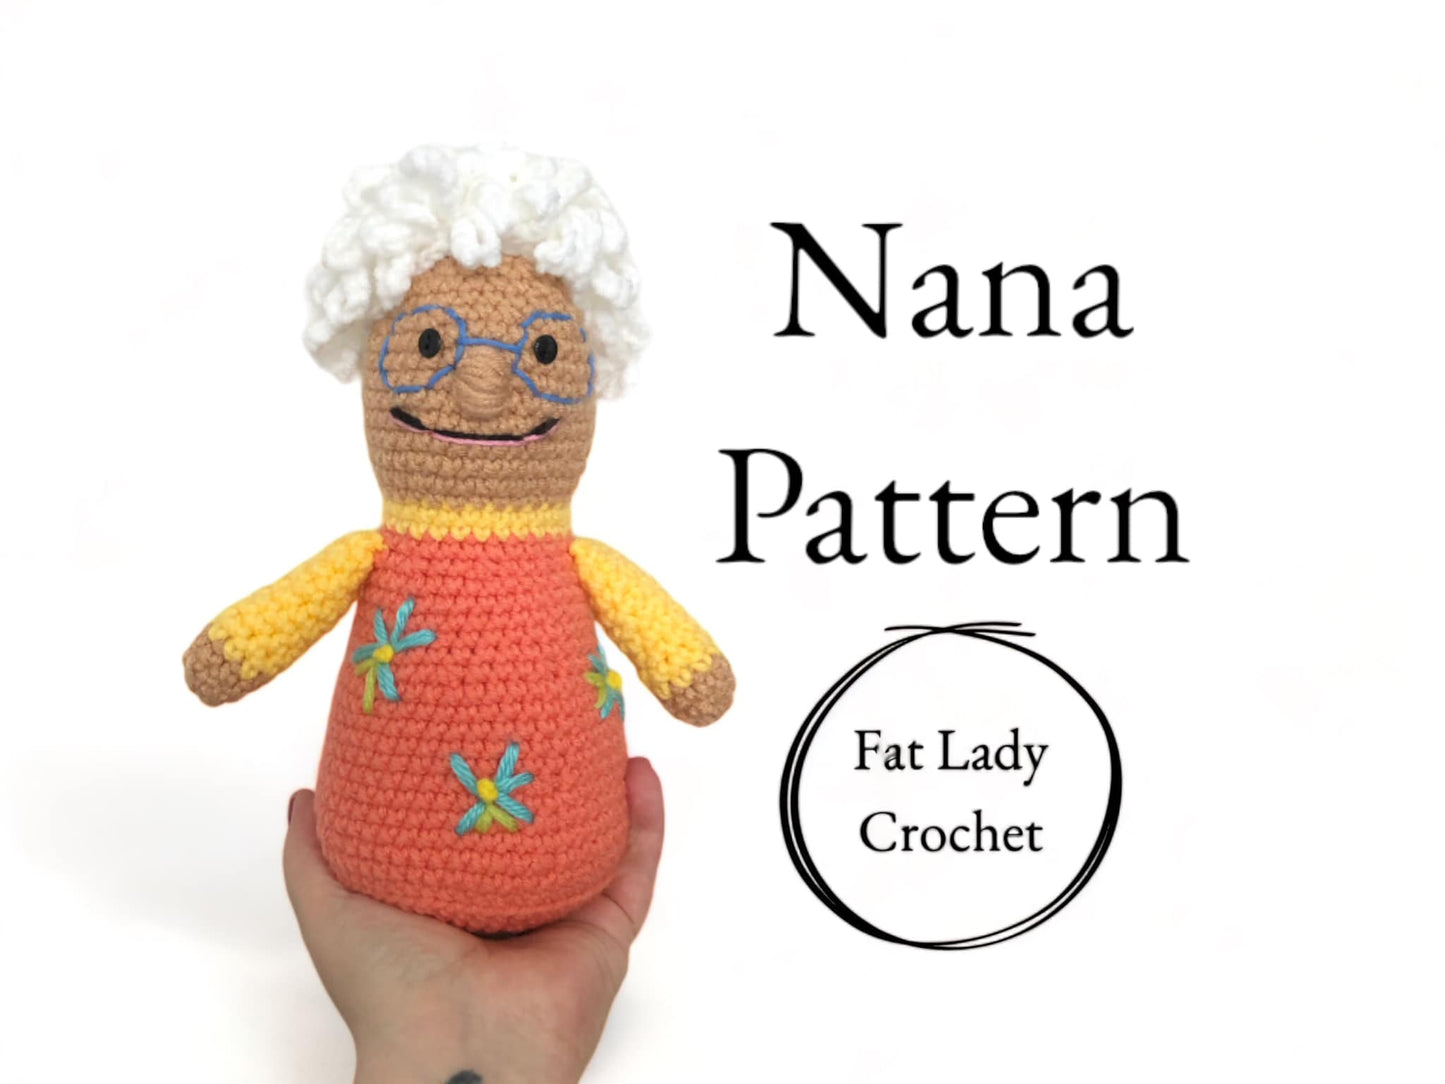 PATTERN: Crochet Nanalan Nana PDF